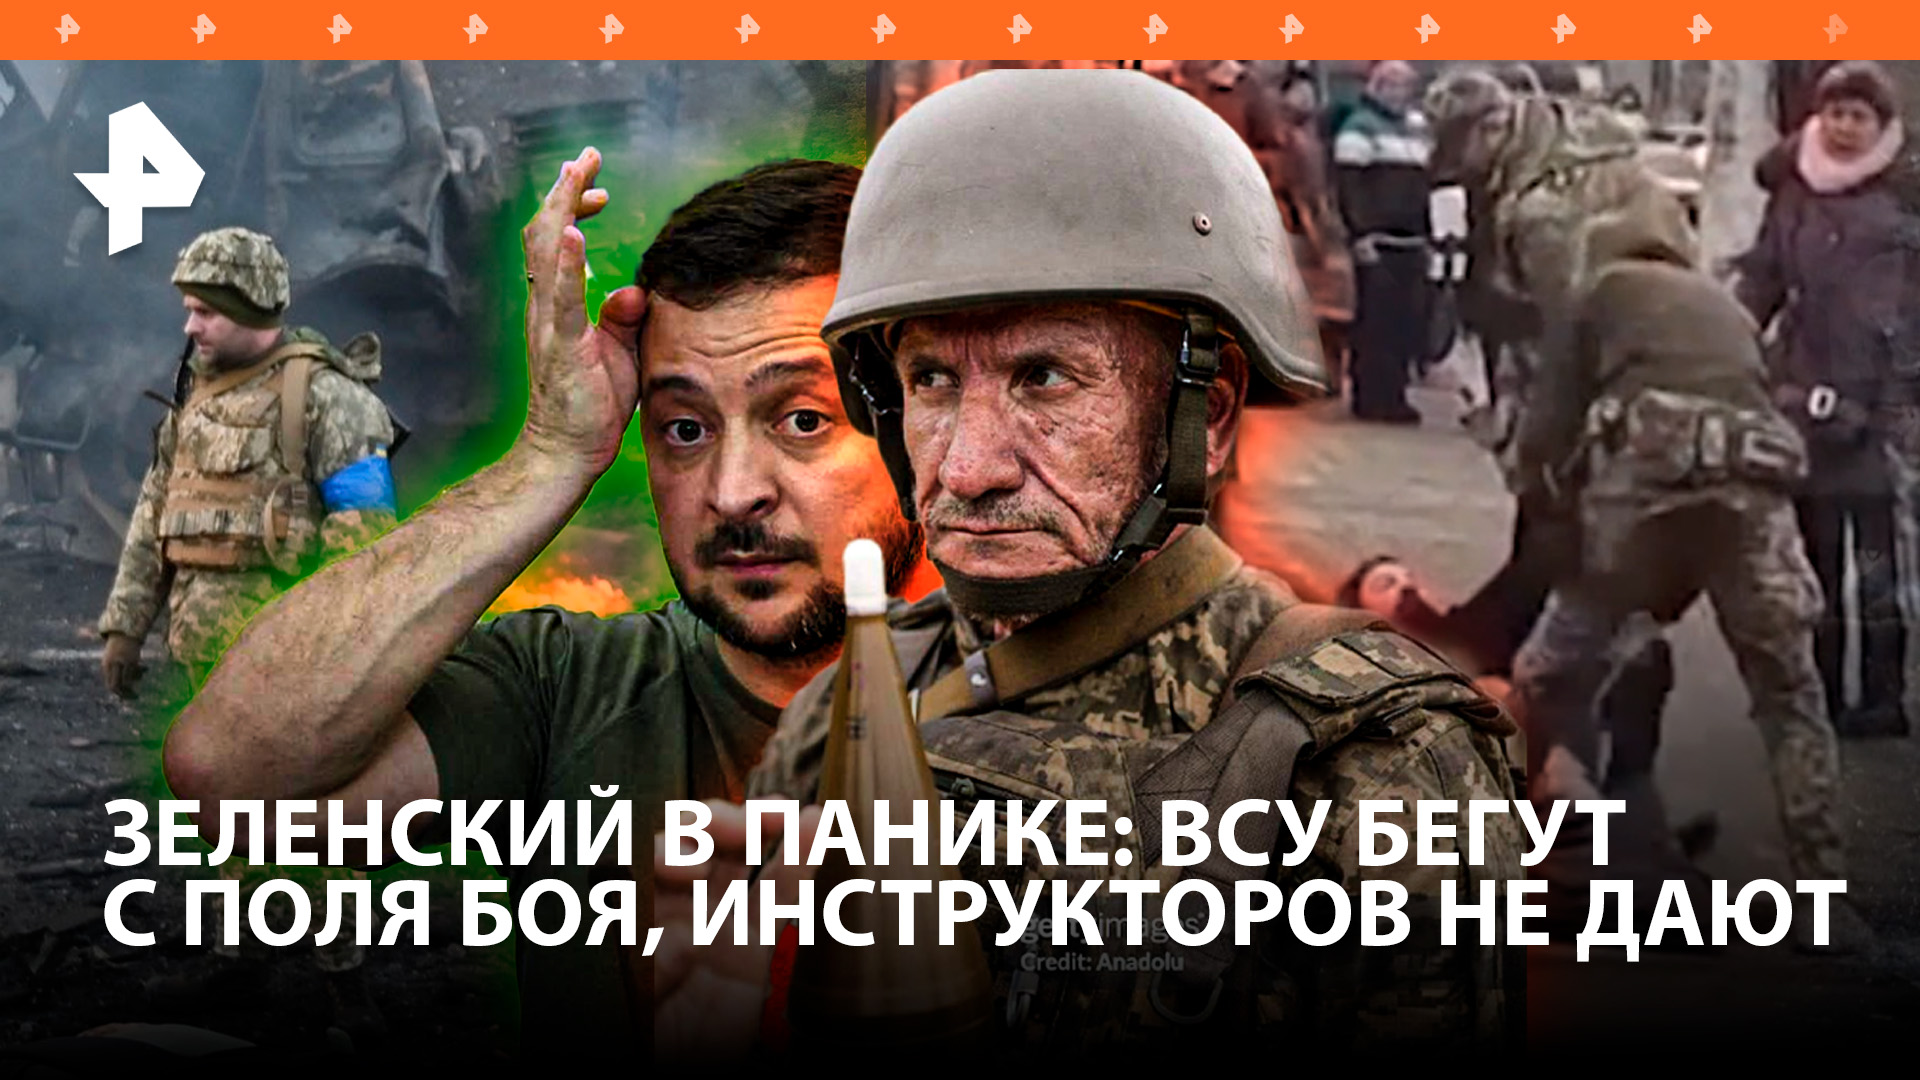 Бегут, сверкая пятками: массовое оставление позиций в ВСУ / Укроновобранцы под 60 лет шокировали